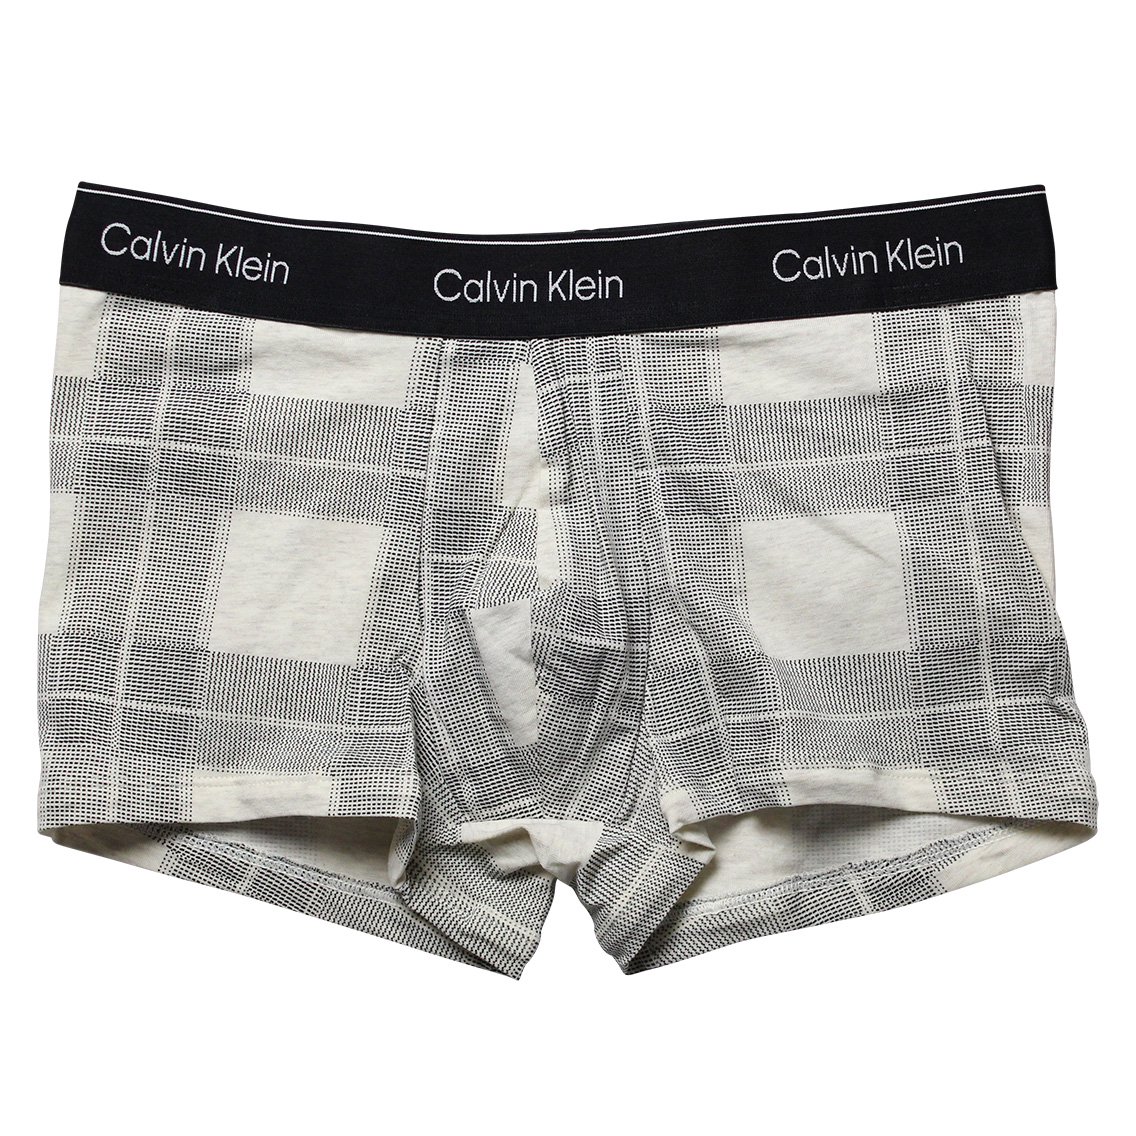 Calvin Klein(カルバンクライン)[NB3359-100]:ボクサーパンツ,男性下着 ...